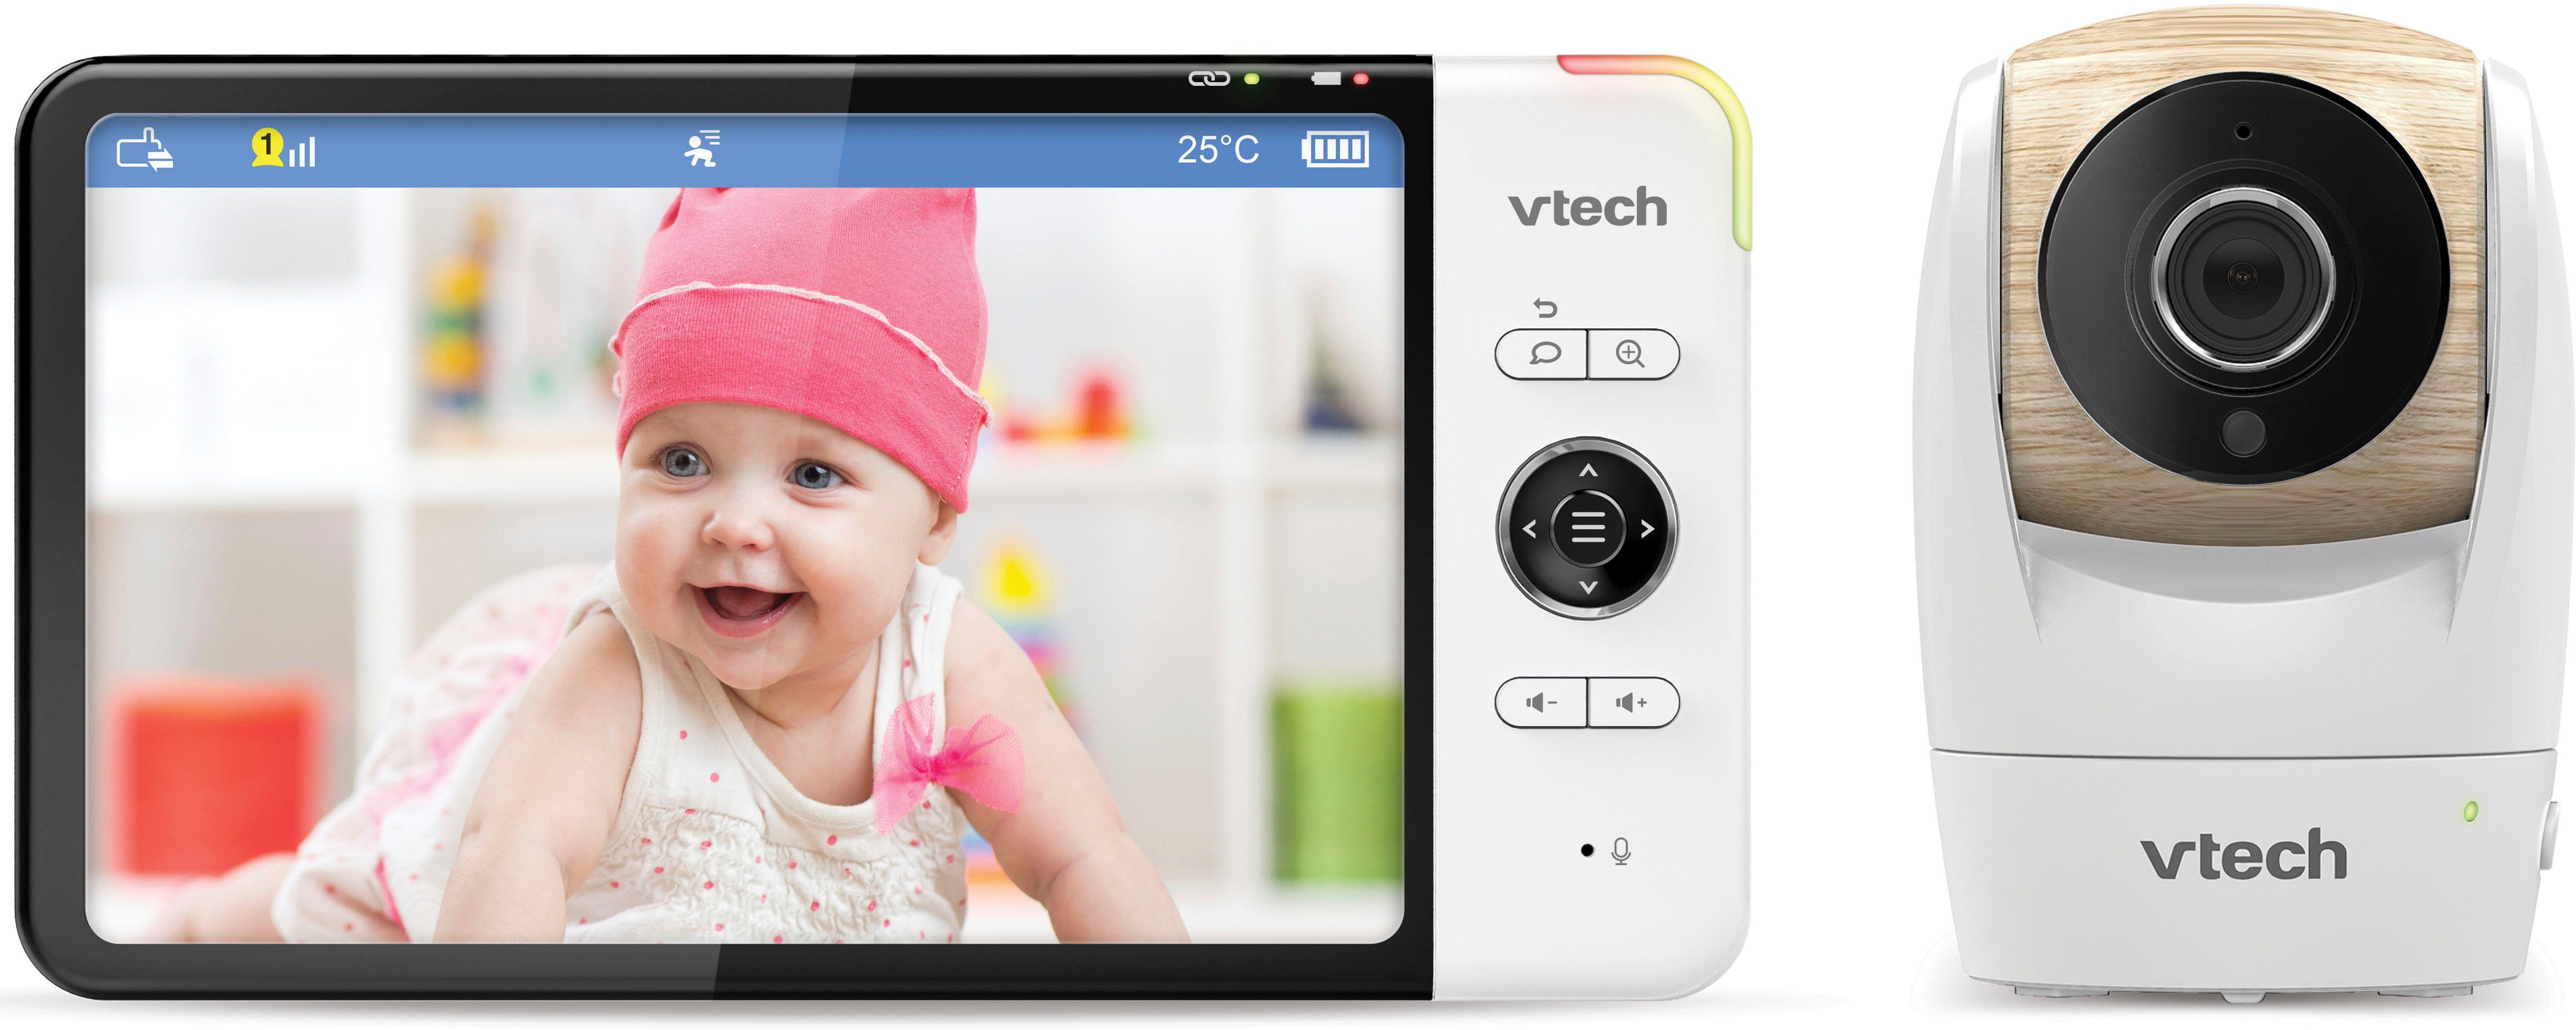 Boifun Babyphone 5'' 720P HD IPS Bildschirm Babyphone mit Kamera